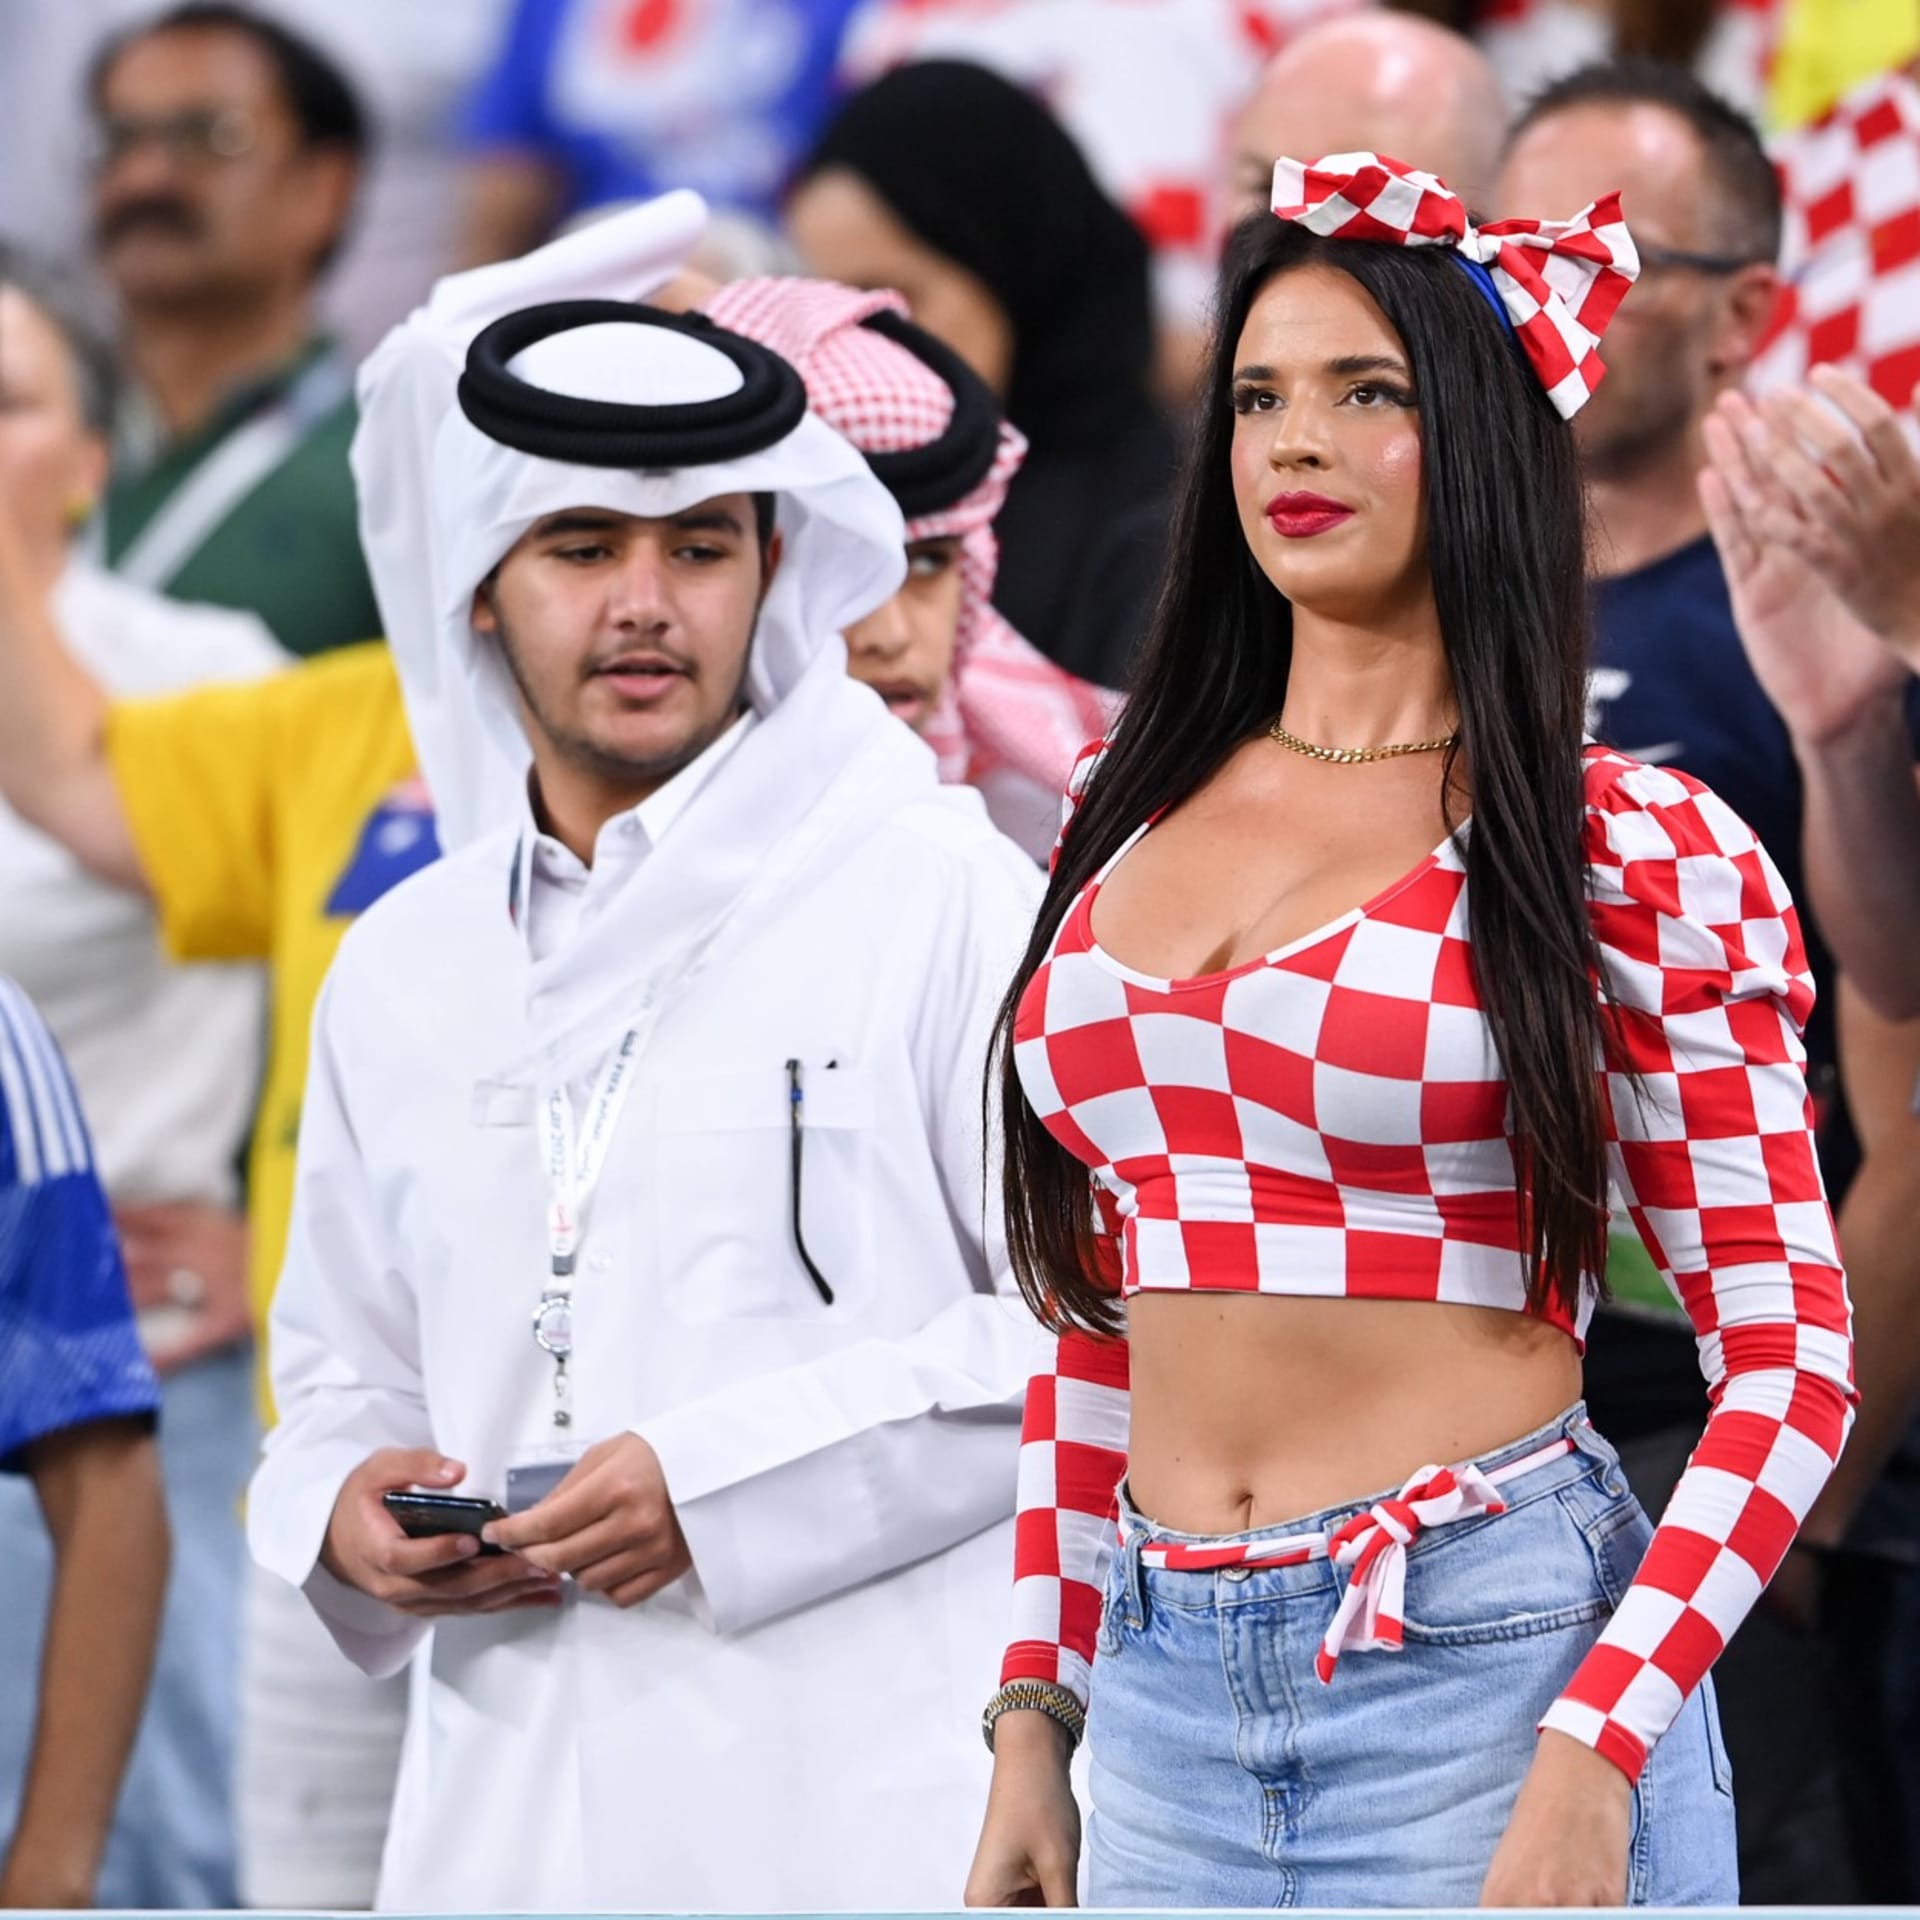 Na blížící se fotbalové Euro se těší statisíce fanoušků. Do Německa by měla dorazit i modelka Ivana Knöllová, která je skalní fanynkou chorvatské reprezentace. O pozdvižení se postarala již na šampionátu v Kataru svými odvážnými outfity.